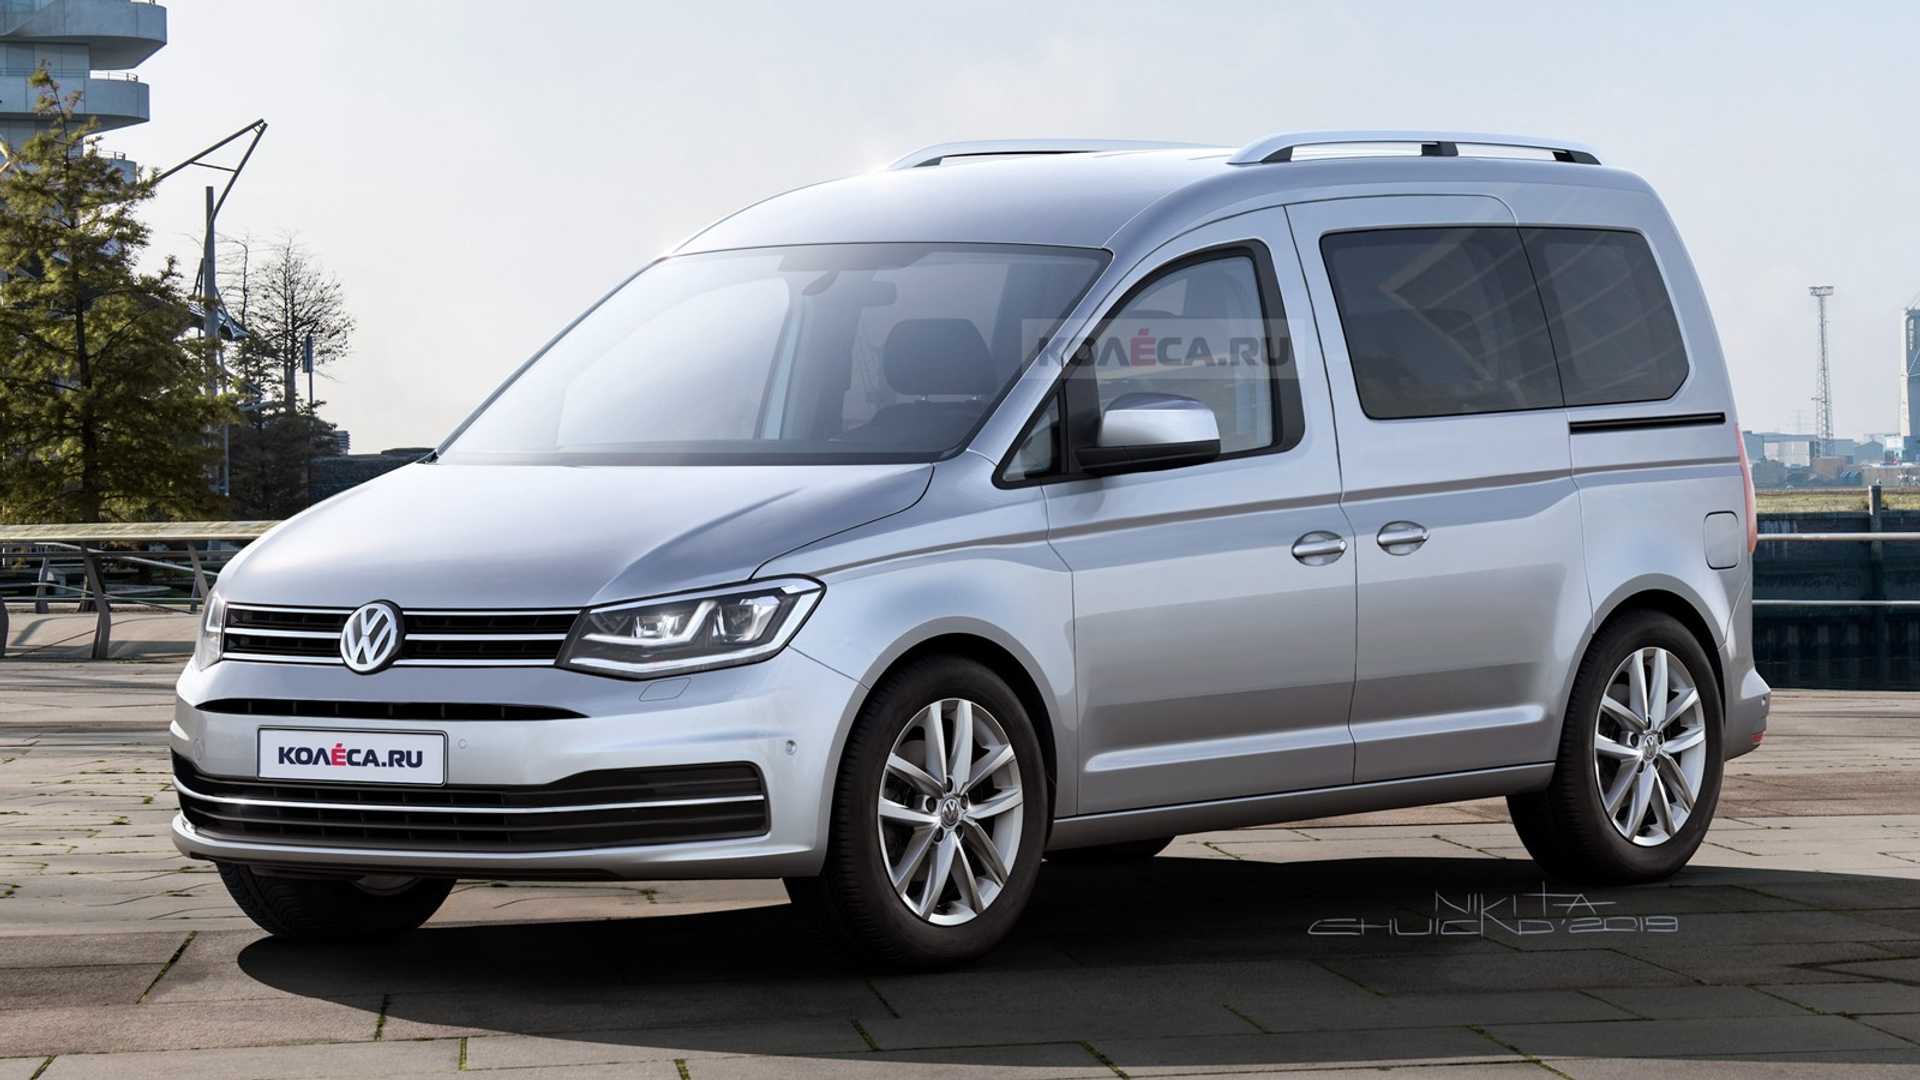 Volkswagen Caddy 2020 nowa generacja już w lutym